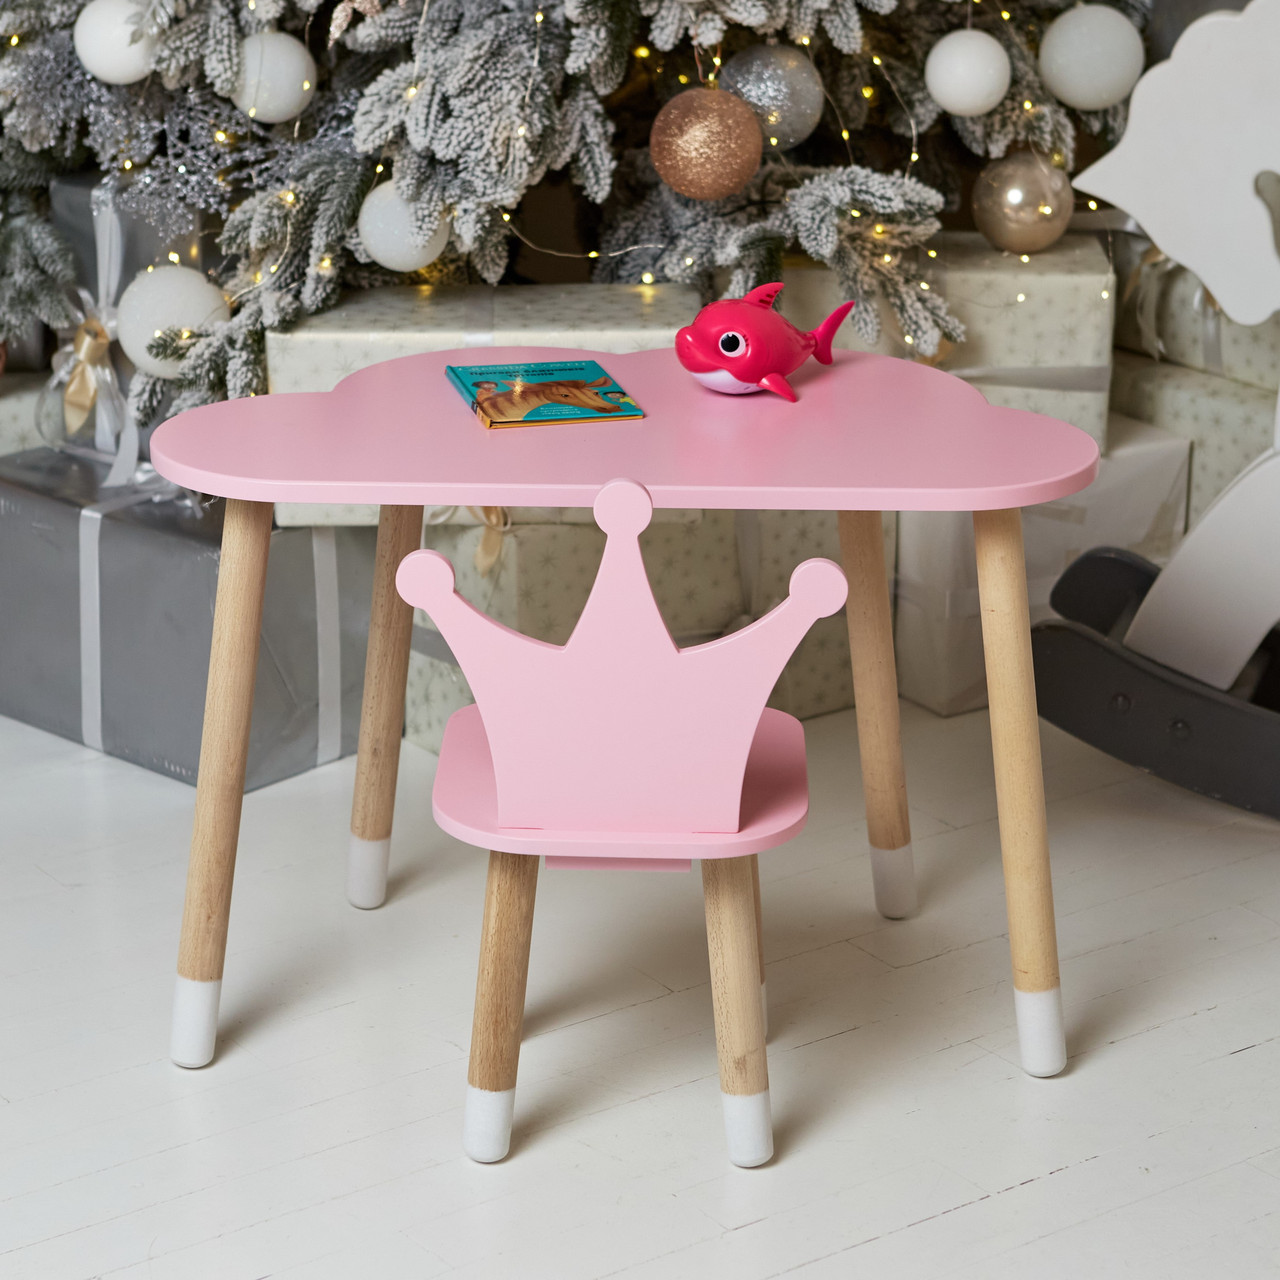 Дитячий столик хмаринка і стільчик корона рожева. Столик для ігор, занять, їжі